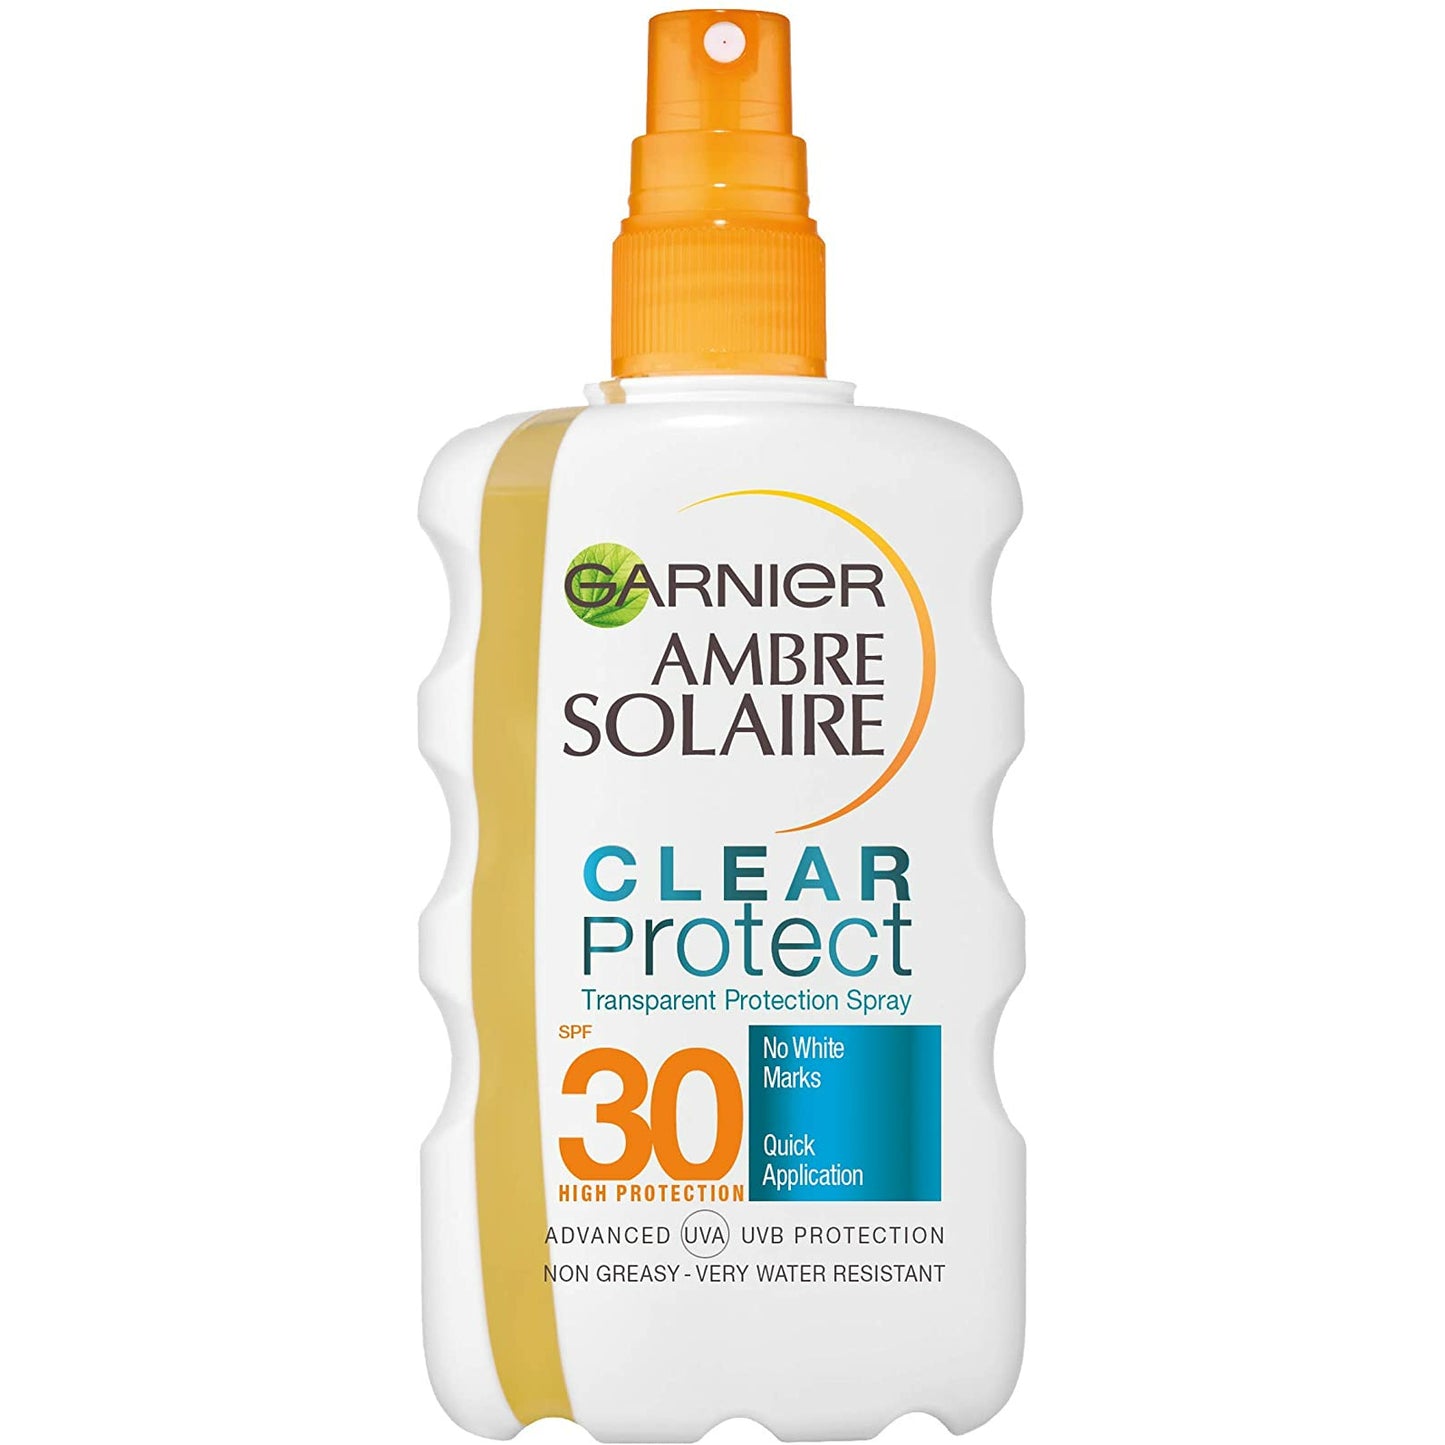 Garnier Ambre Solaire Clear Protect SPF 30 200ml